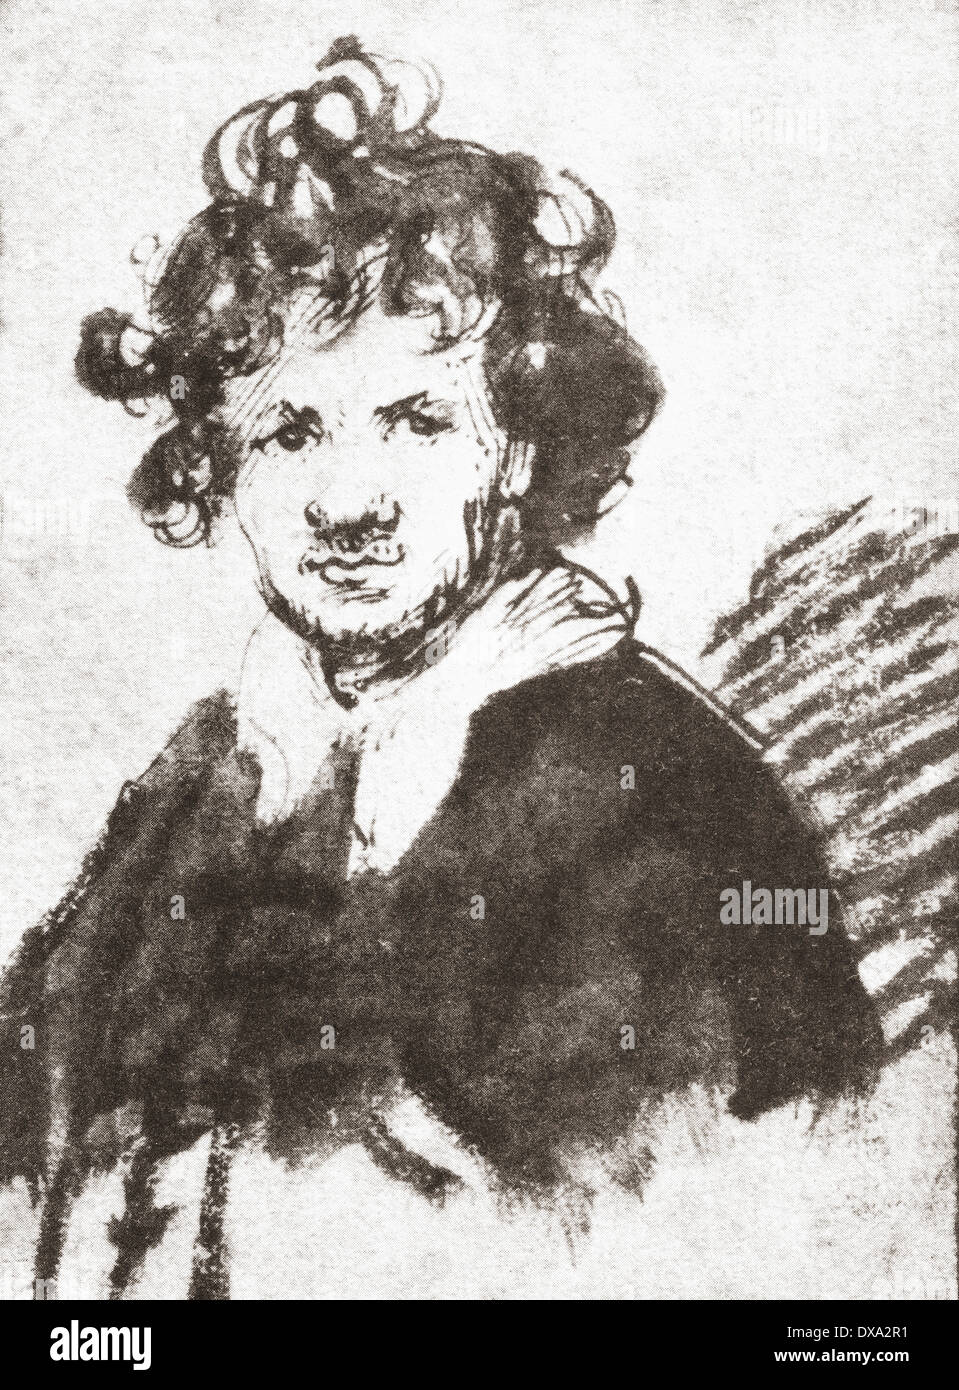 Autoritratto di Rembrandt Harmenszoon van Rijn, 1606-1669. Pittore olandese e incisore. Foto Stock